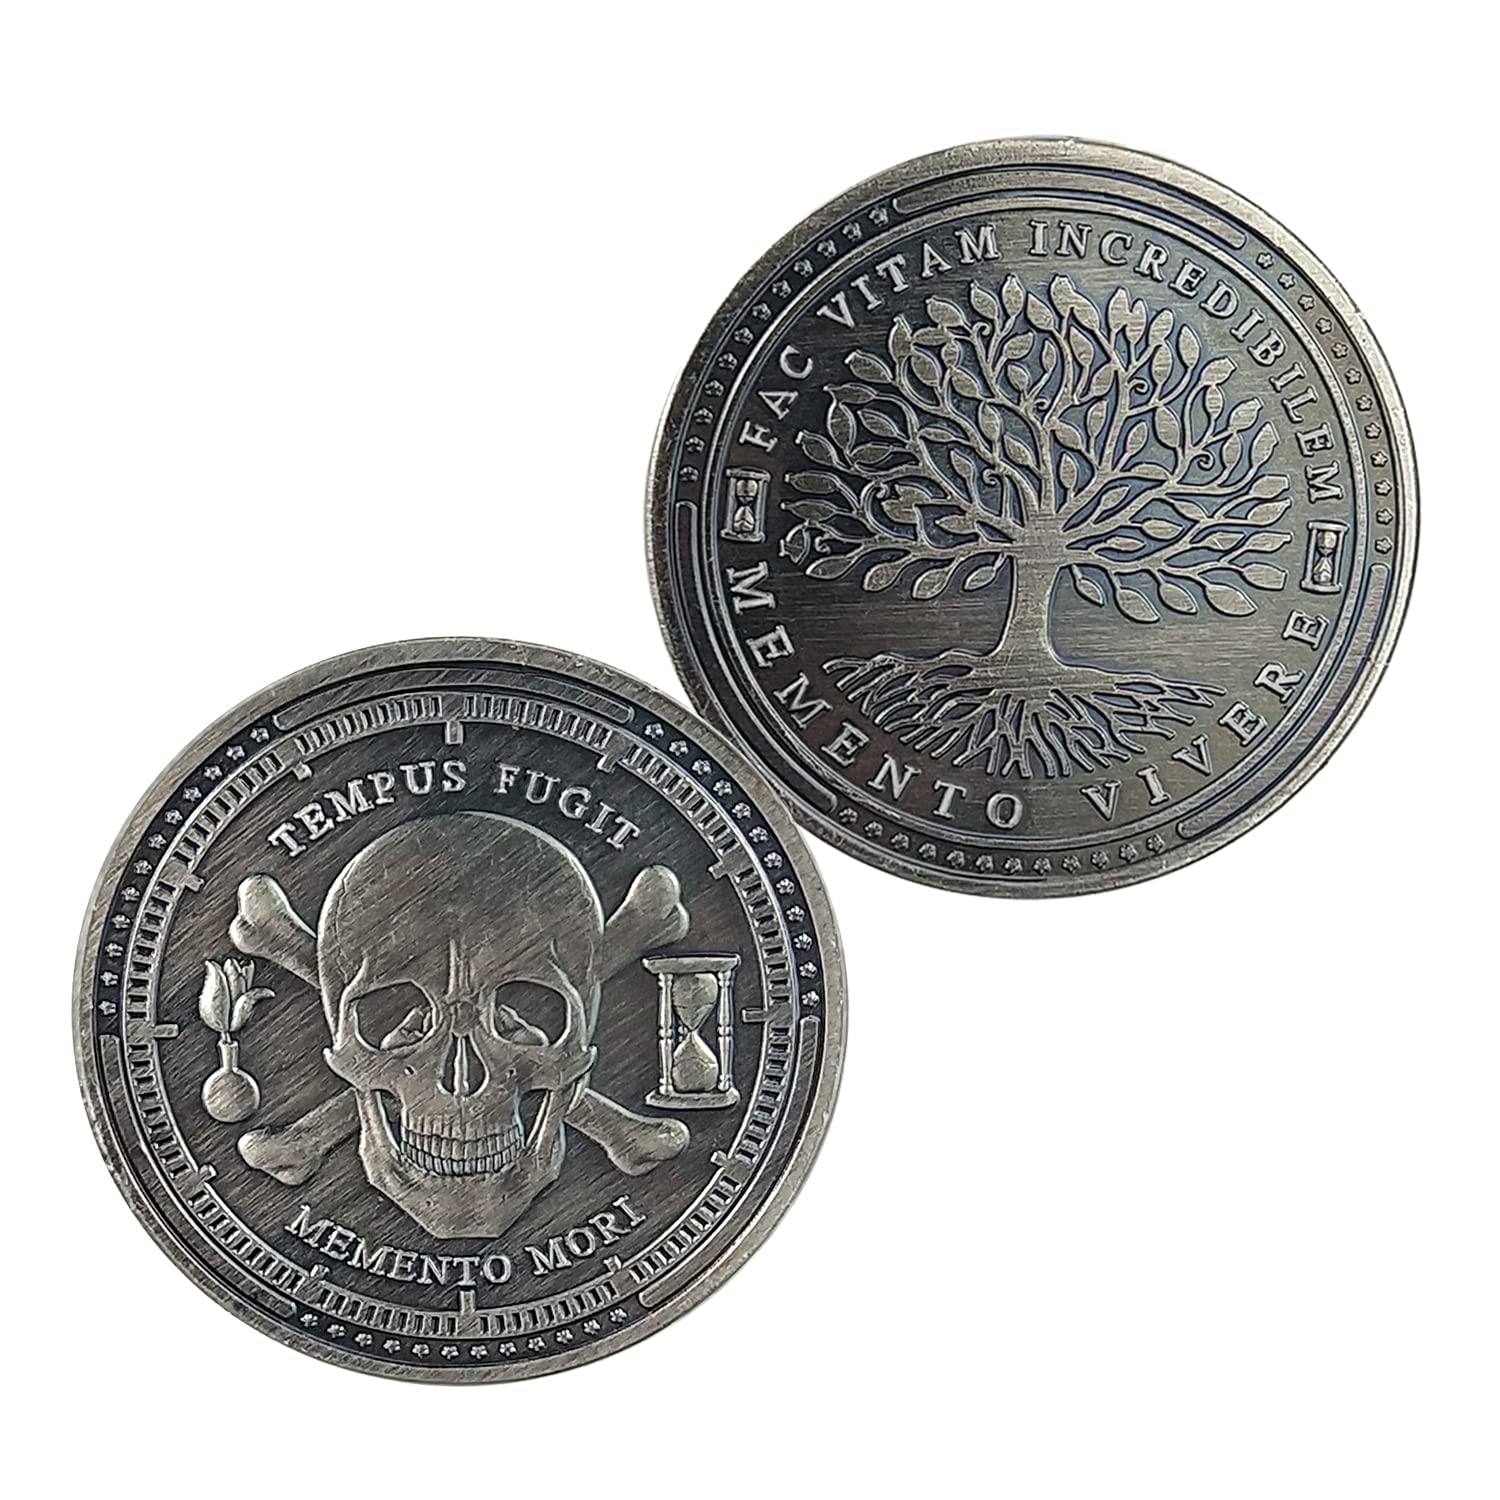 Memento Mori – The Commemorative Coin Company